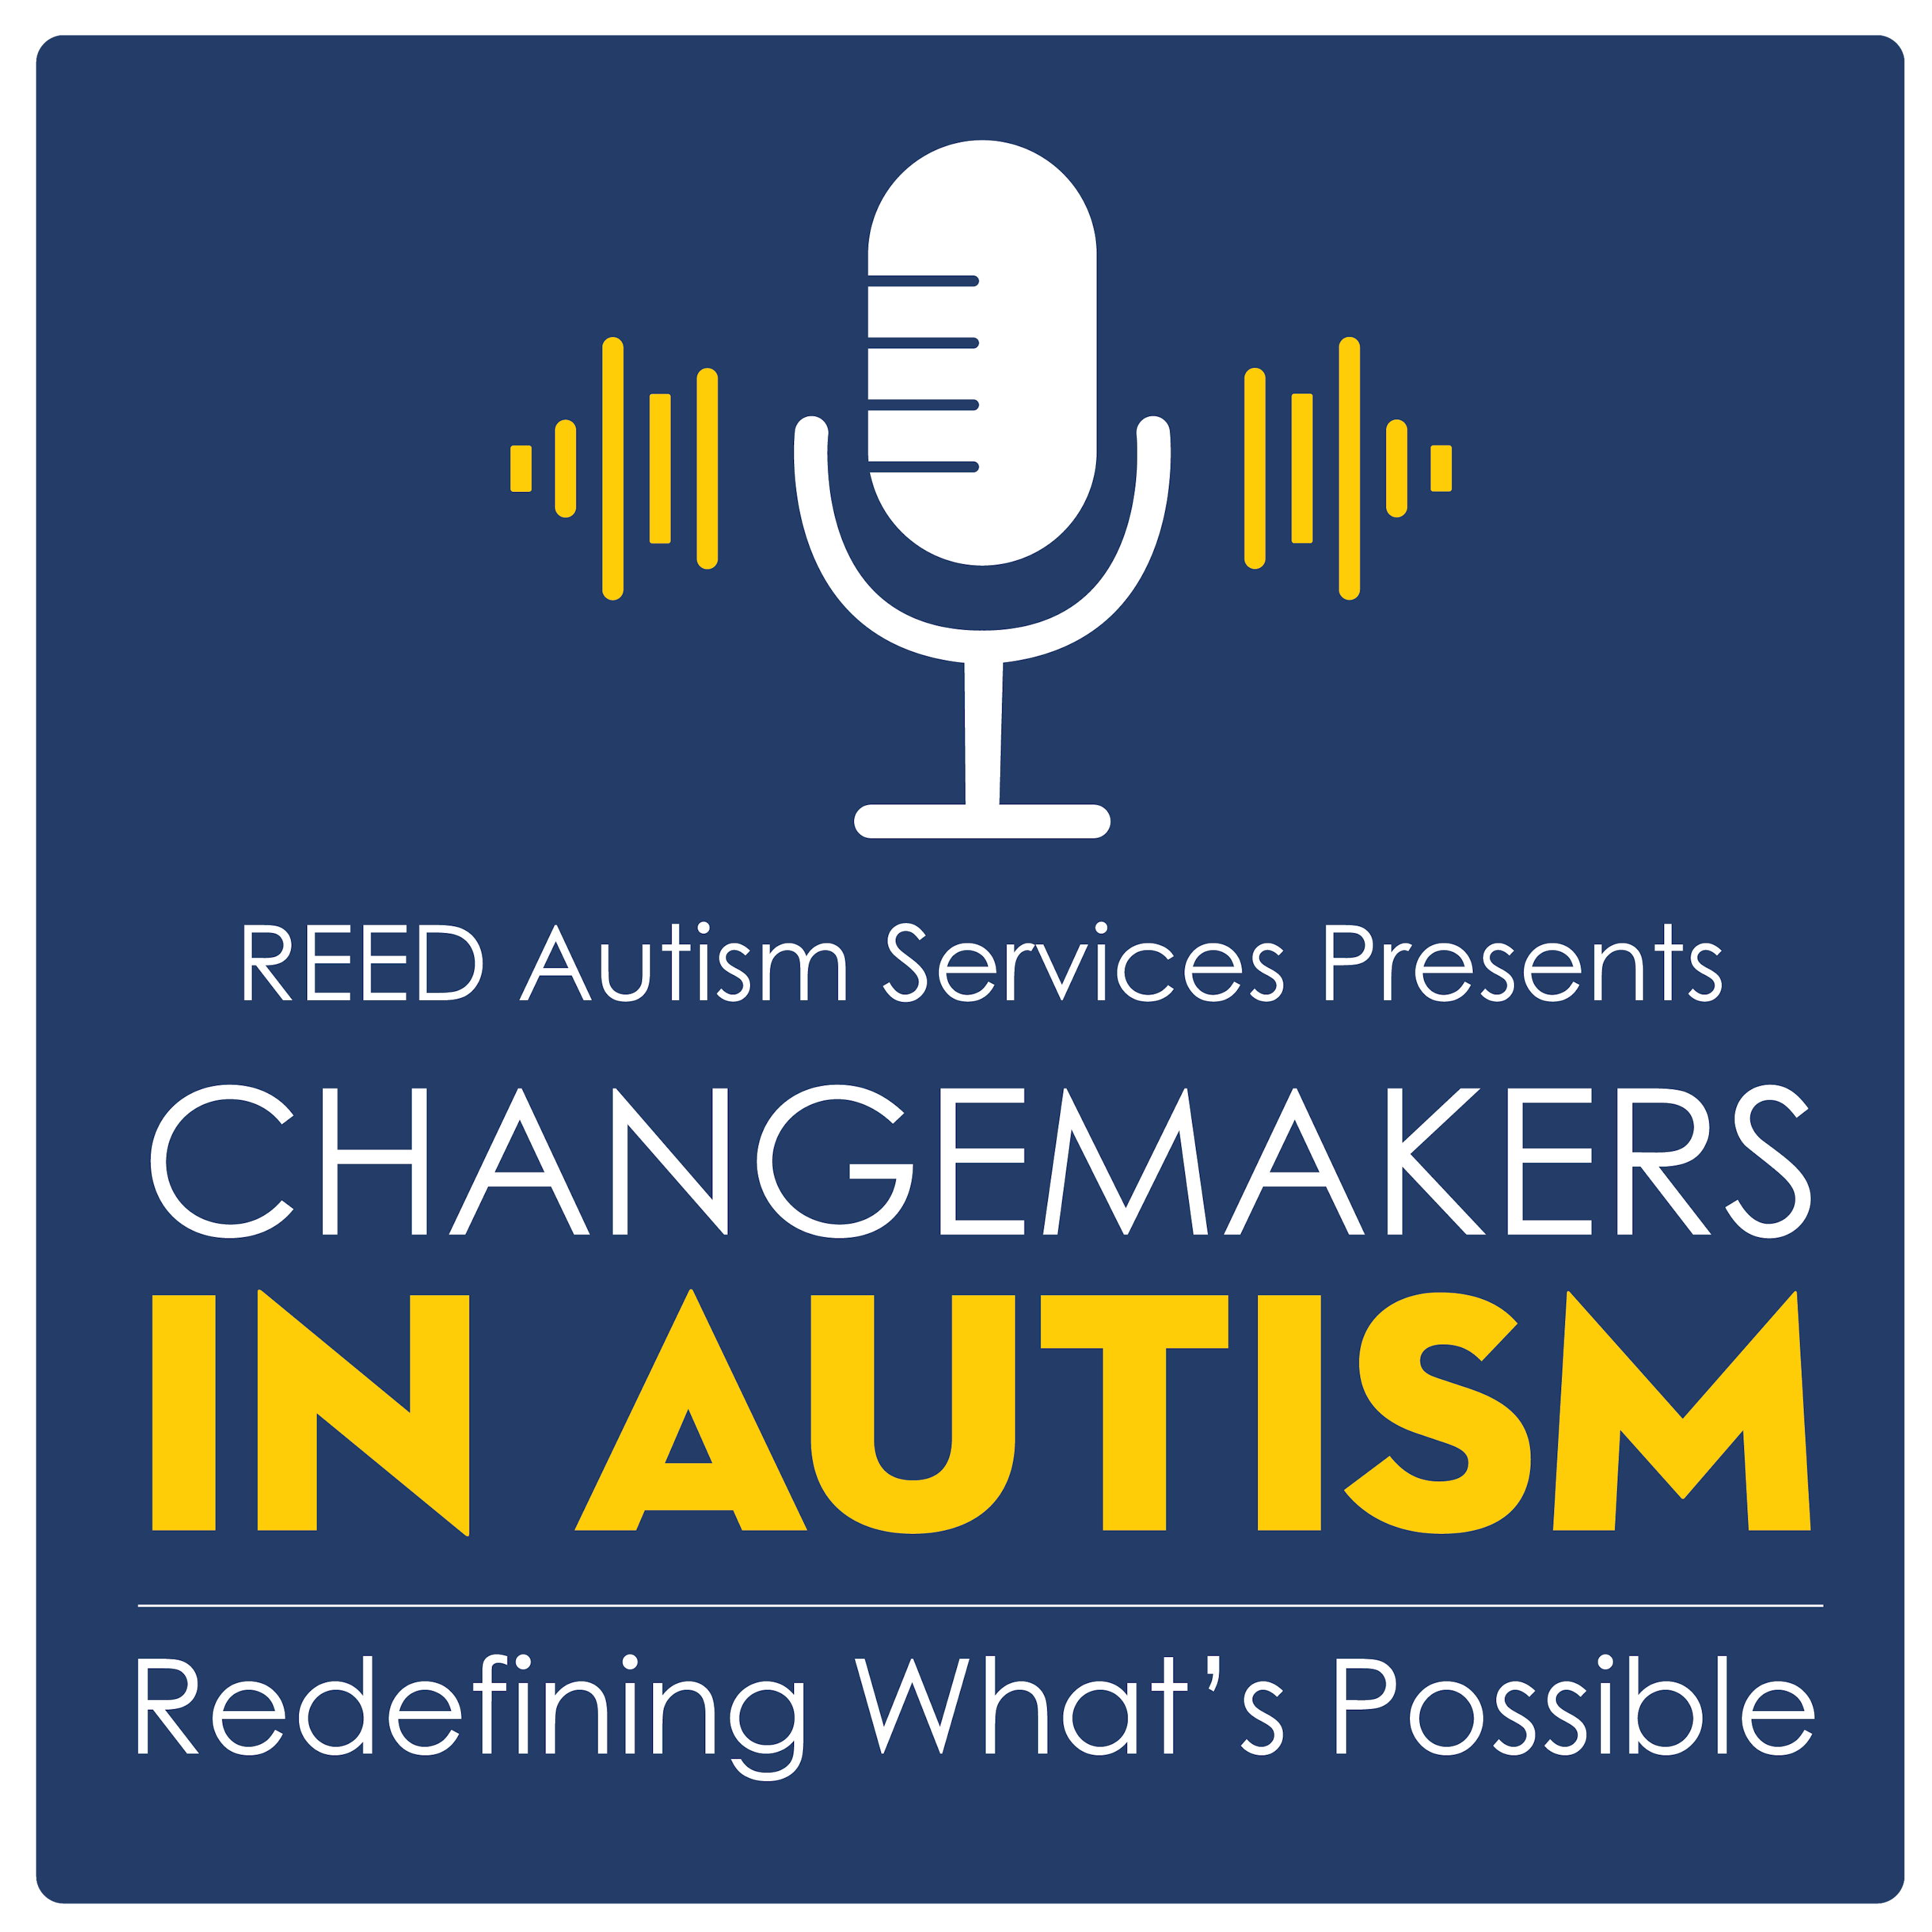 Changemakers In Autism